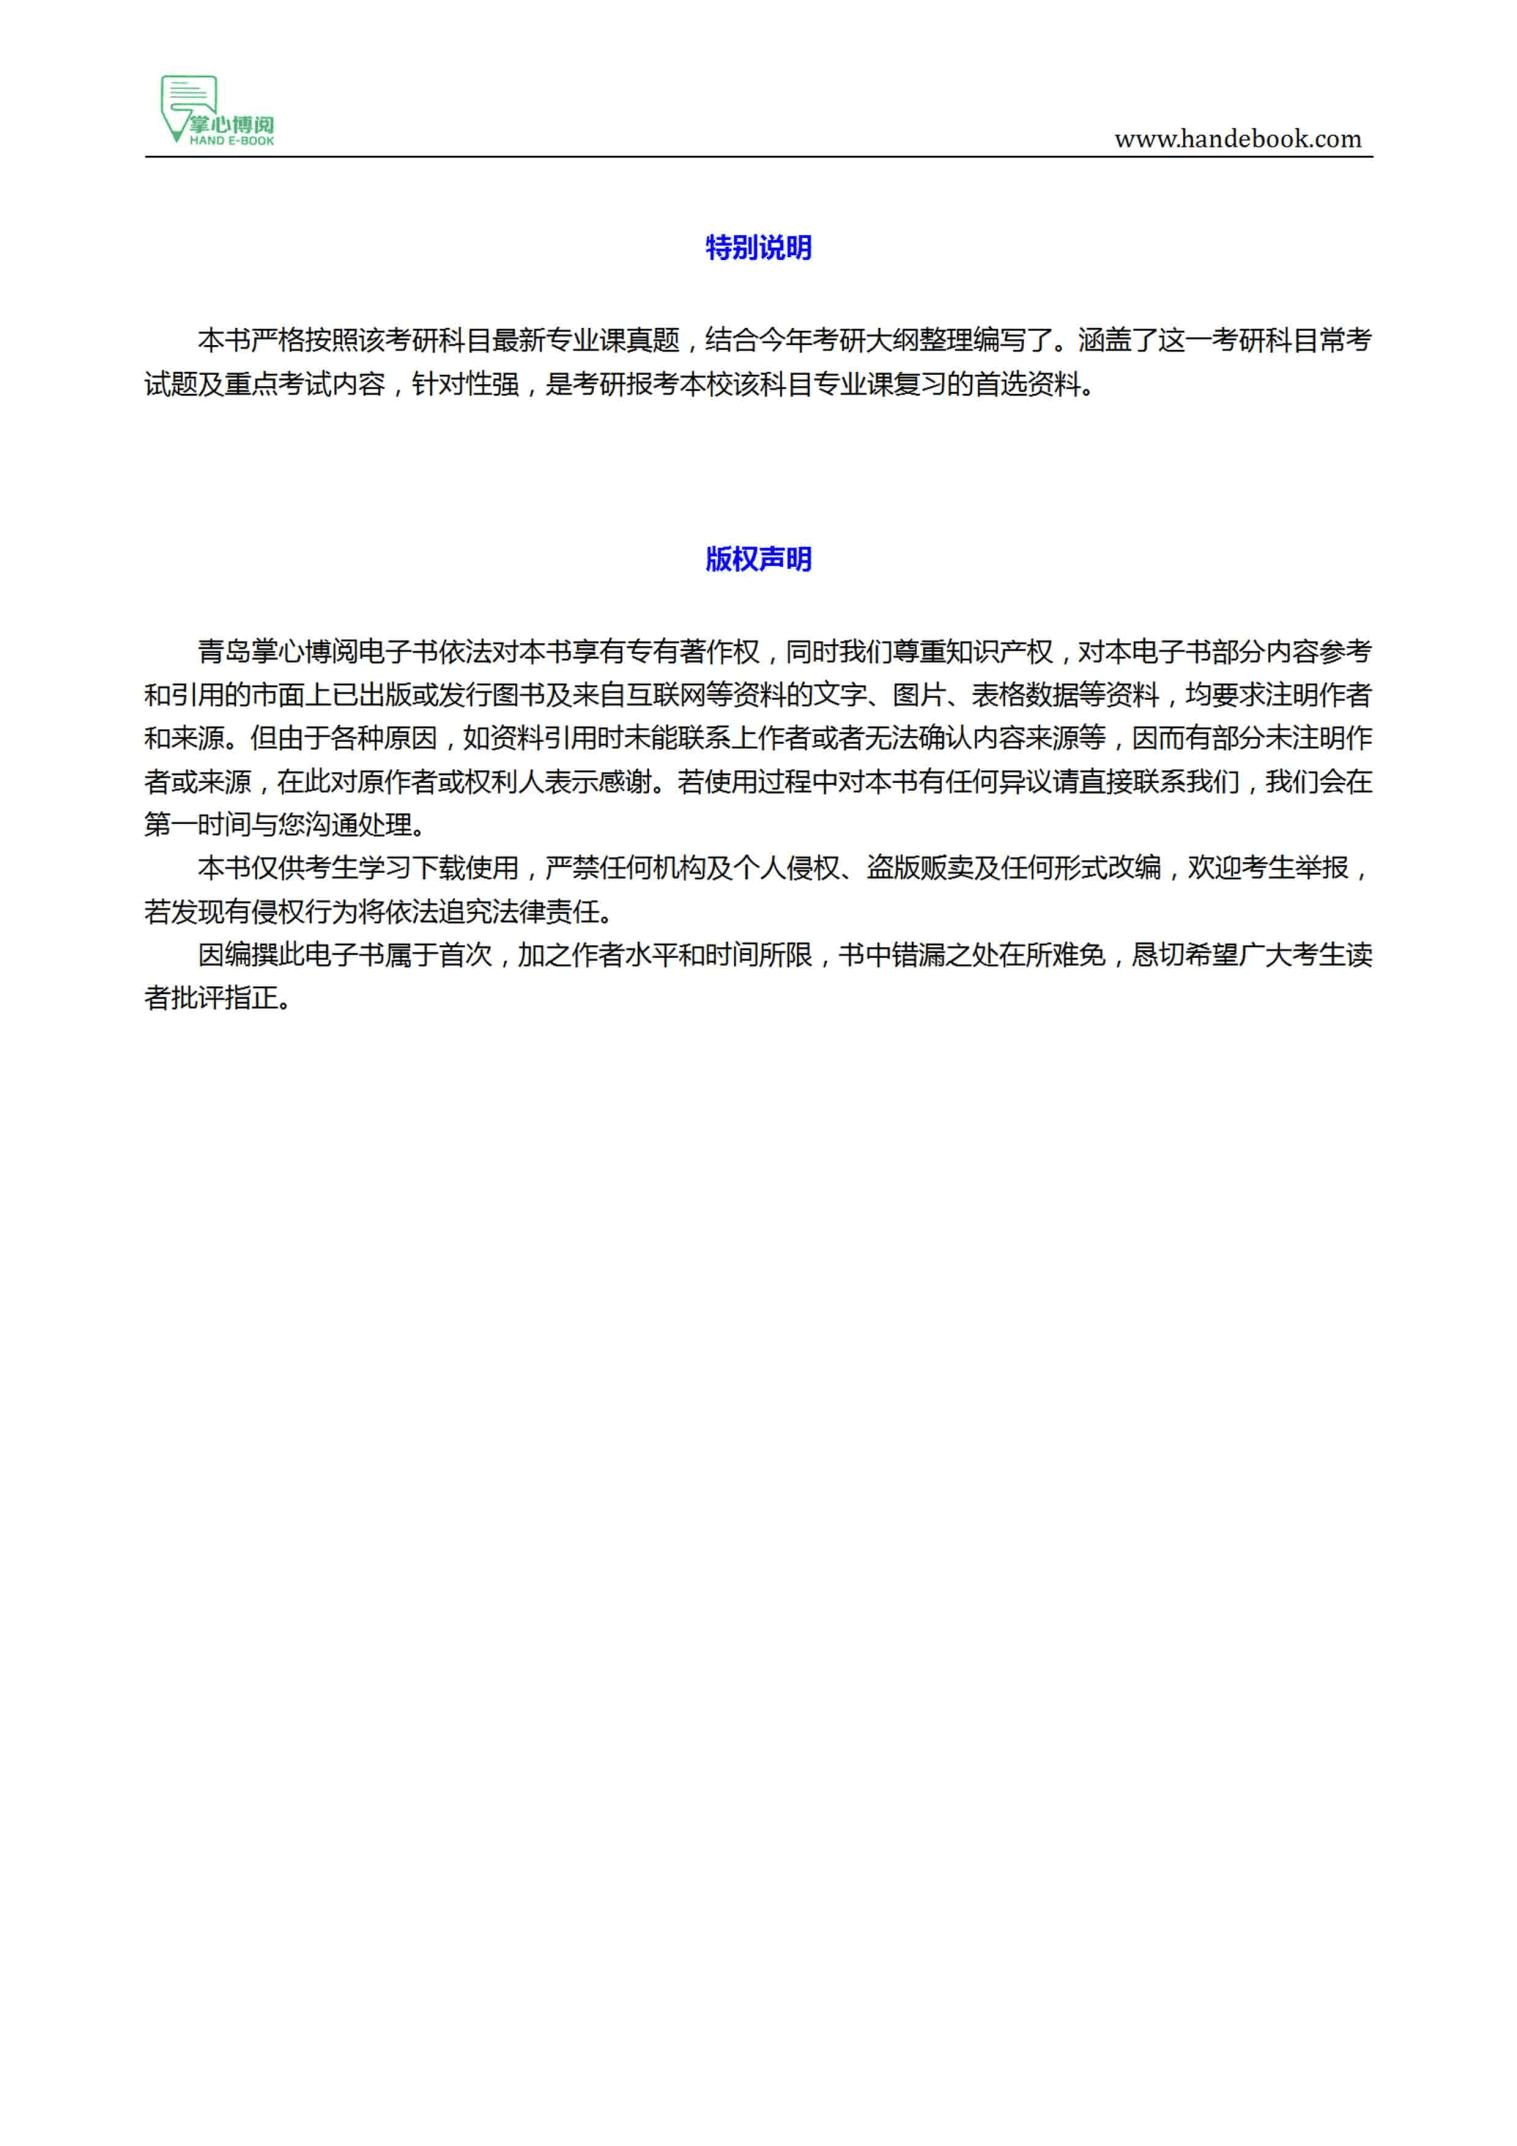 2021年中国社会科学院672哲学综合考研精品资料之北京大学哲学系、高教出版社《中国哲学史》复习提纲